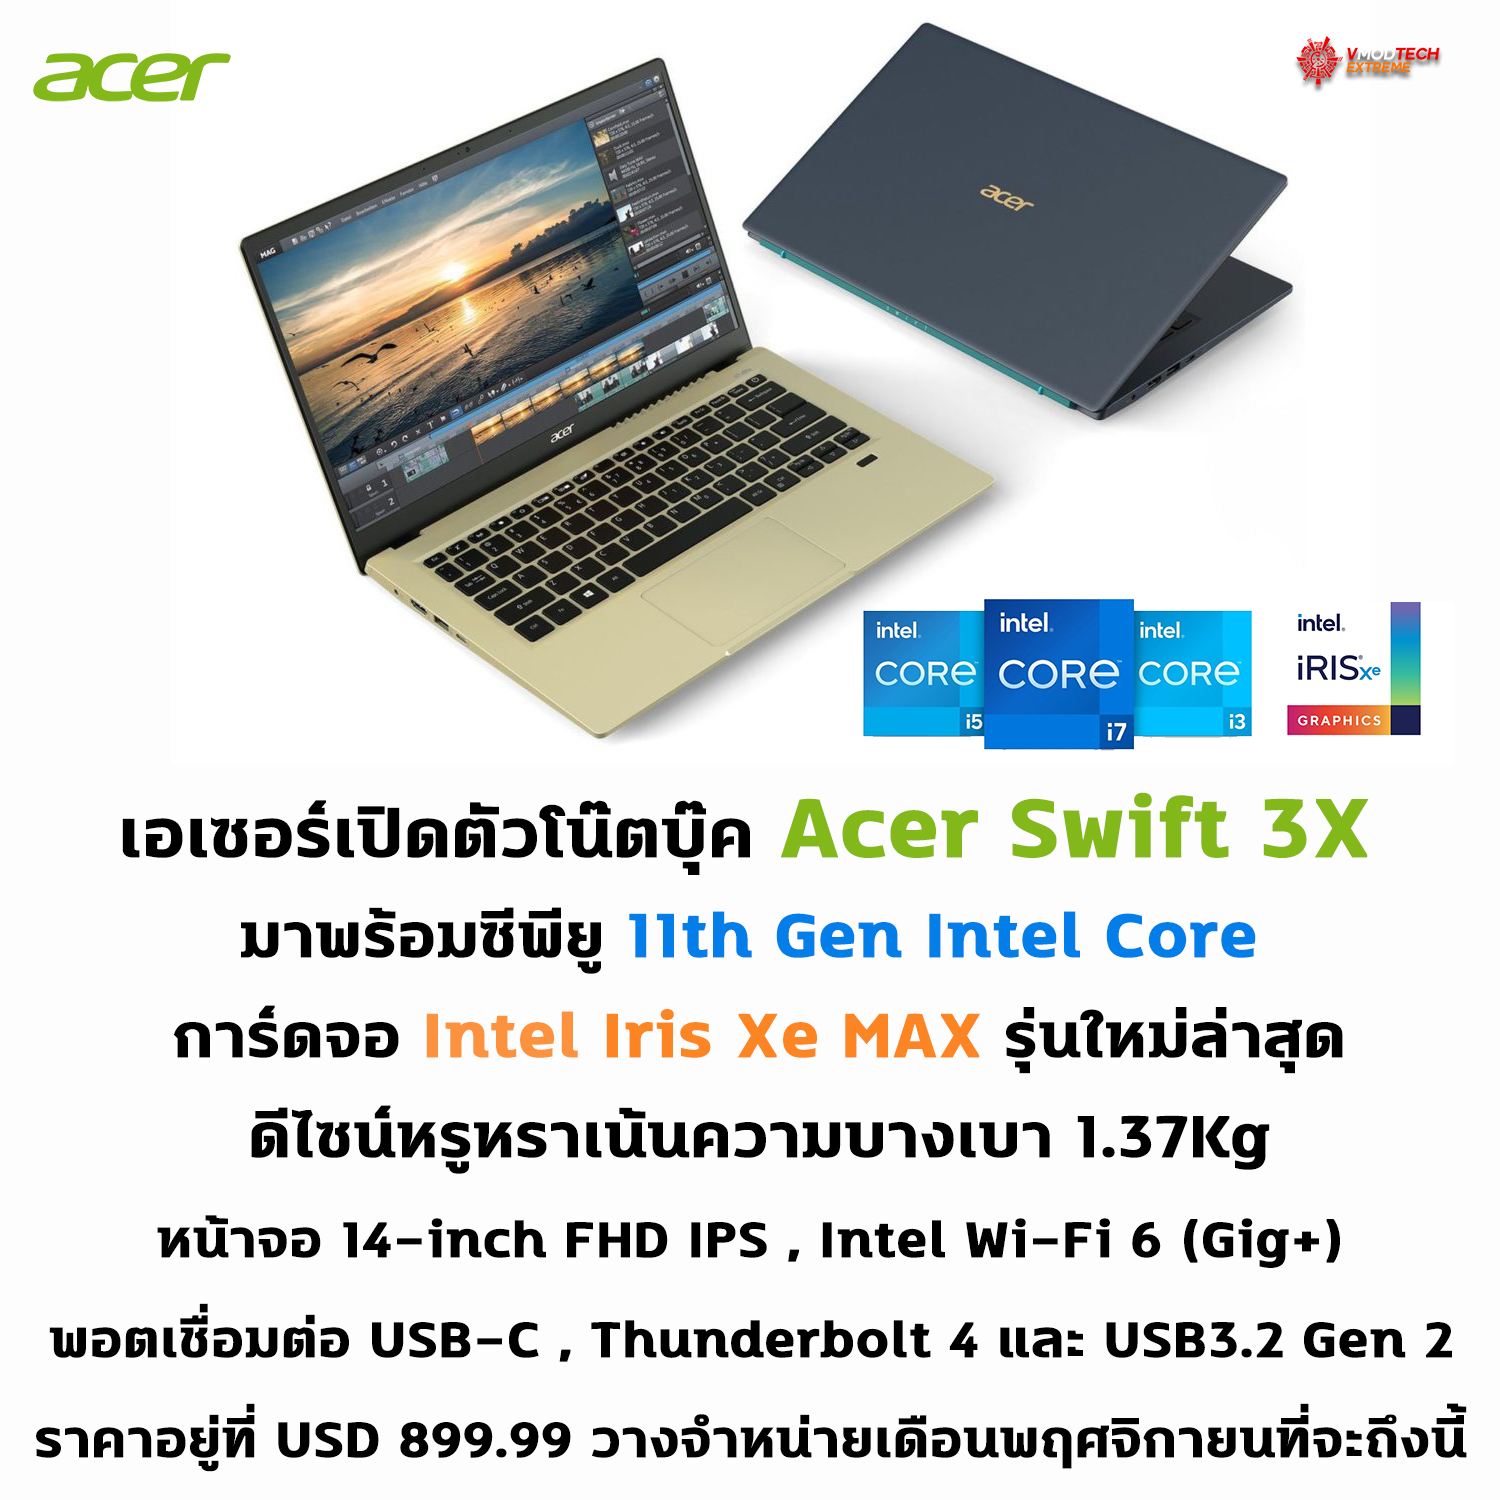 เอเซอร์เปิดตัวโน๊ตบุ๊ค Acer Swift 3X มาพร้อมซีพียู 11th Gen Intel Core การ์ดจอ Intel Iris Xe MAX รุ่นใหม่ล่าสุด 